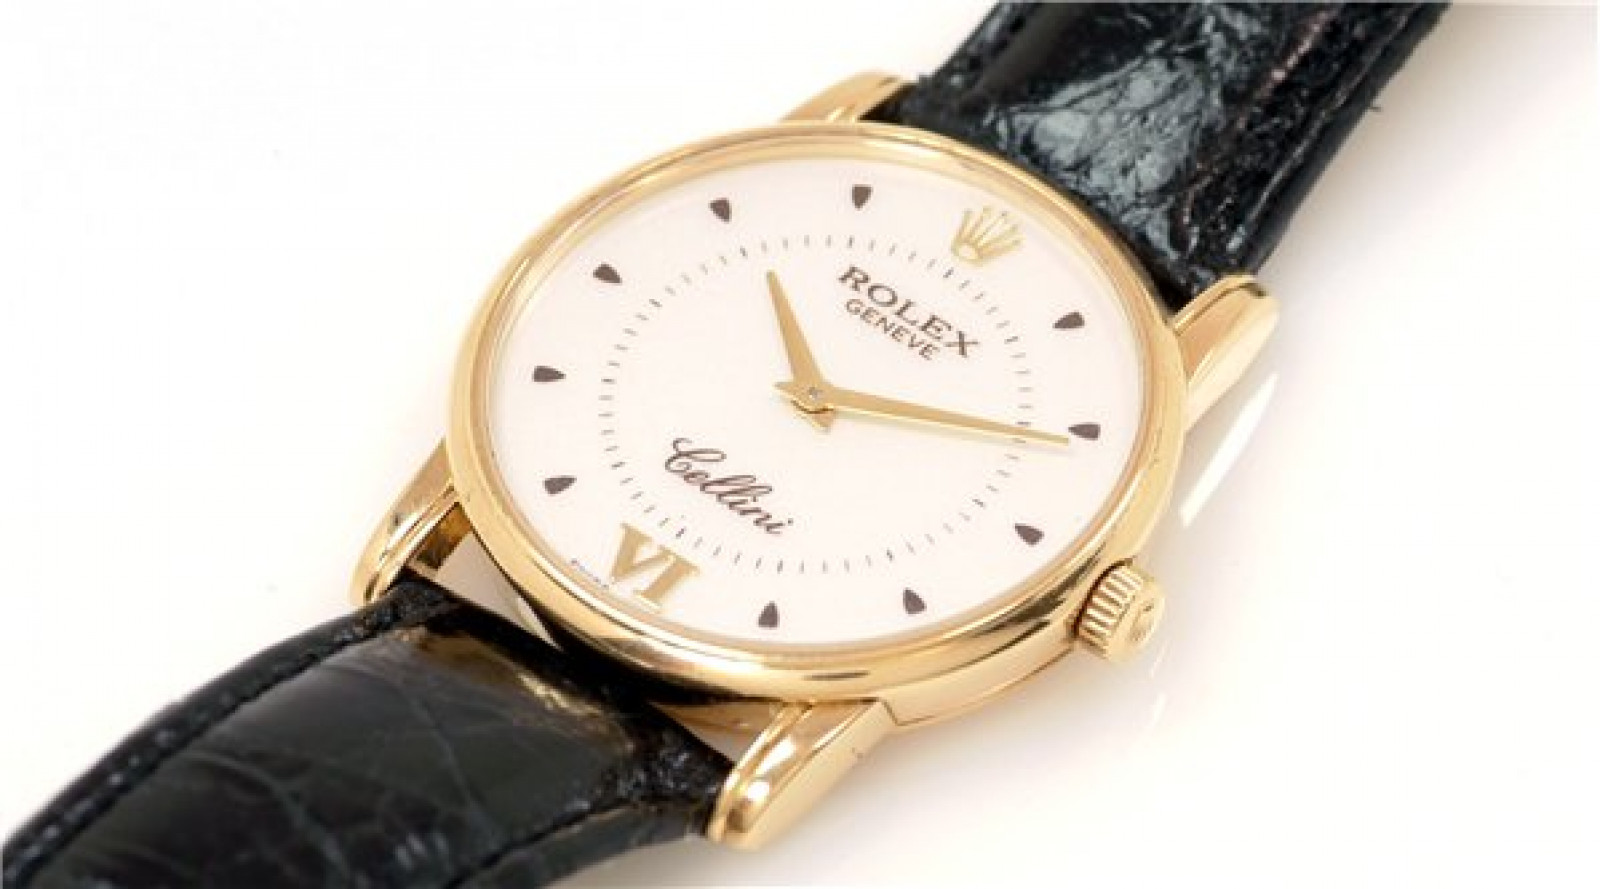 Rolex Cellini 5116 Gold 2001